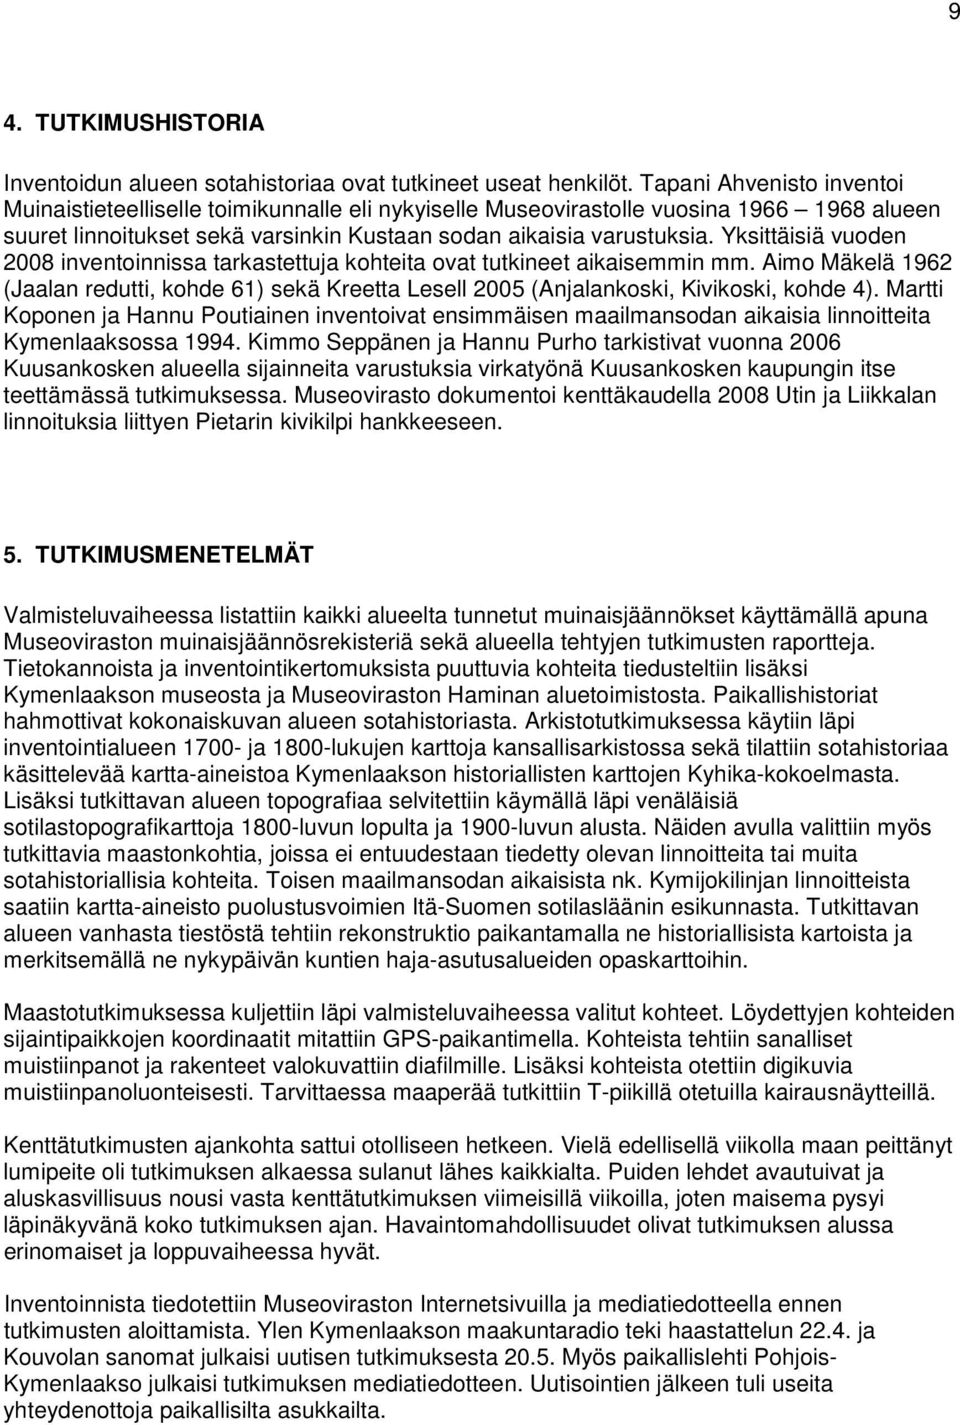 Yksittäisiä vuoden 2008 inventoinnissa tarkastettuja kohteita ovat tutkineet aikaisemmin mm. Aimo Mäkelä 1962 (Jaalan redutti, kohde 61) sekä Kreetta Lesell 2005 (Anjalankoski, Kivikoski, kohde 4).